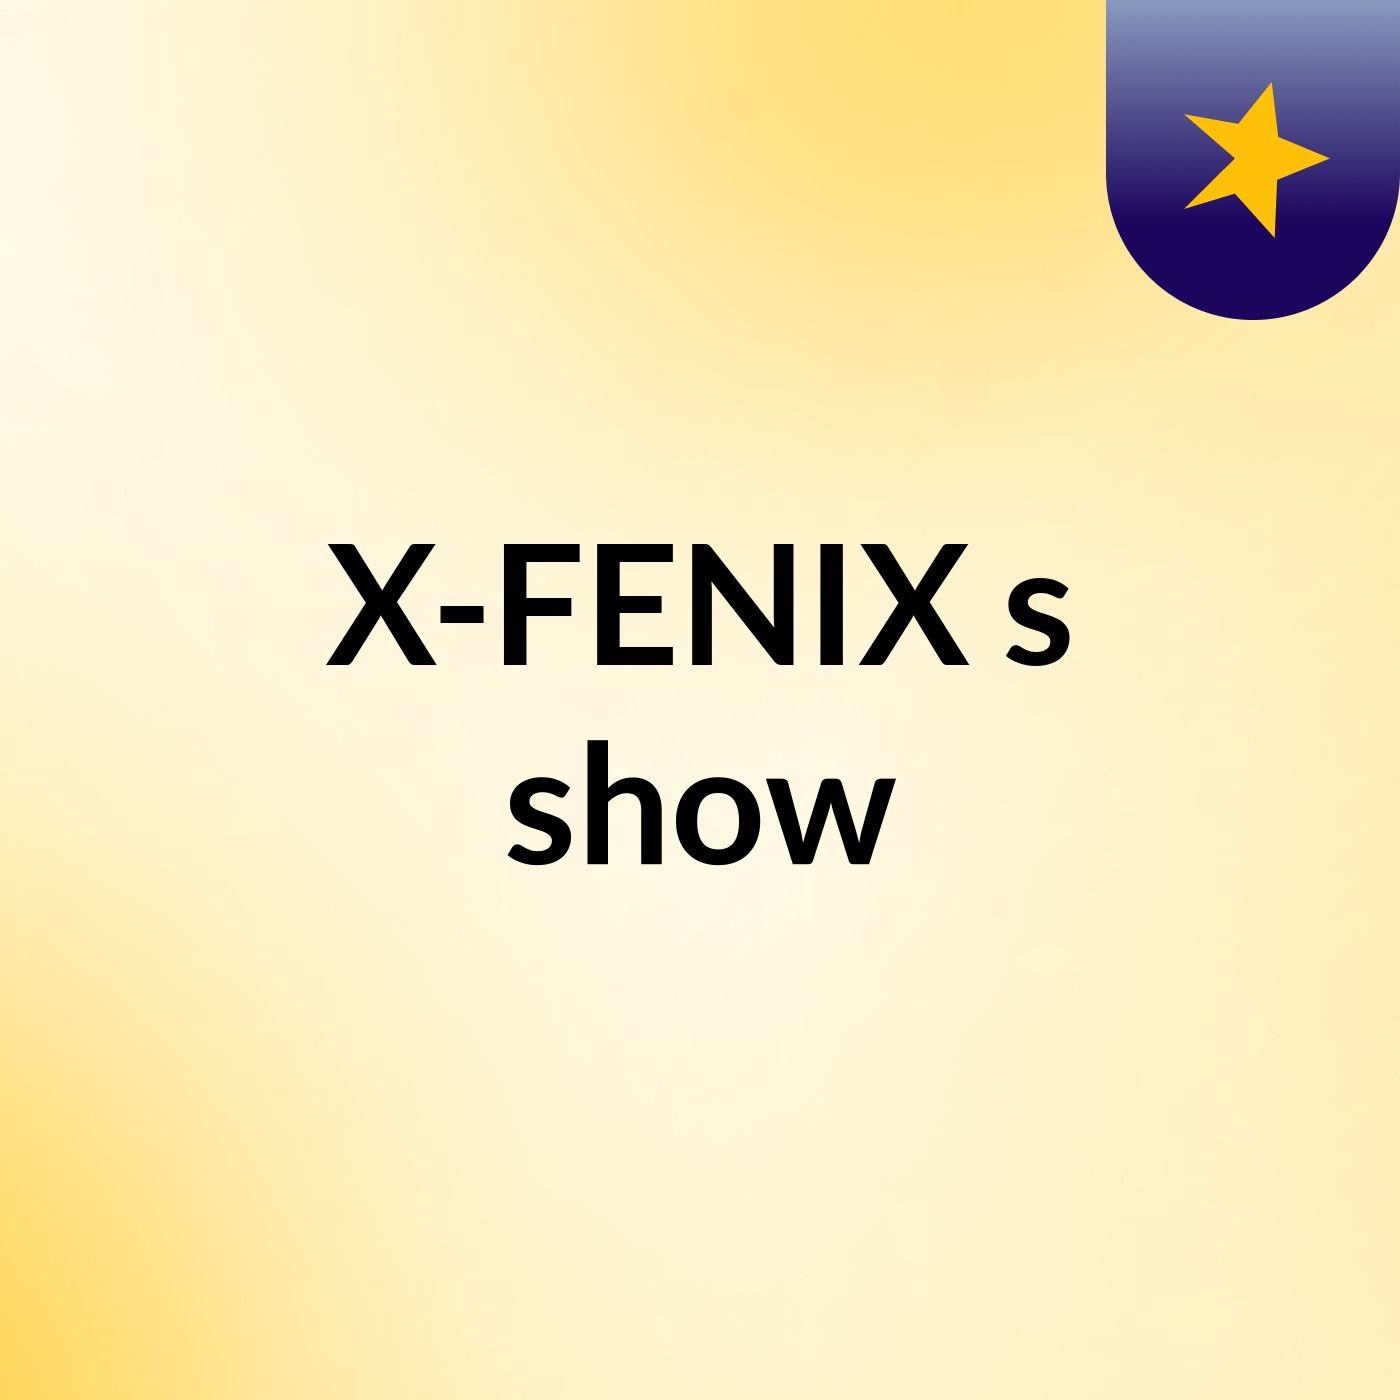 X-FENIX's show